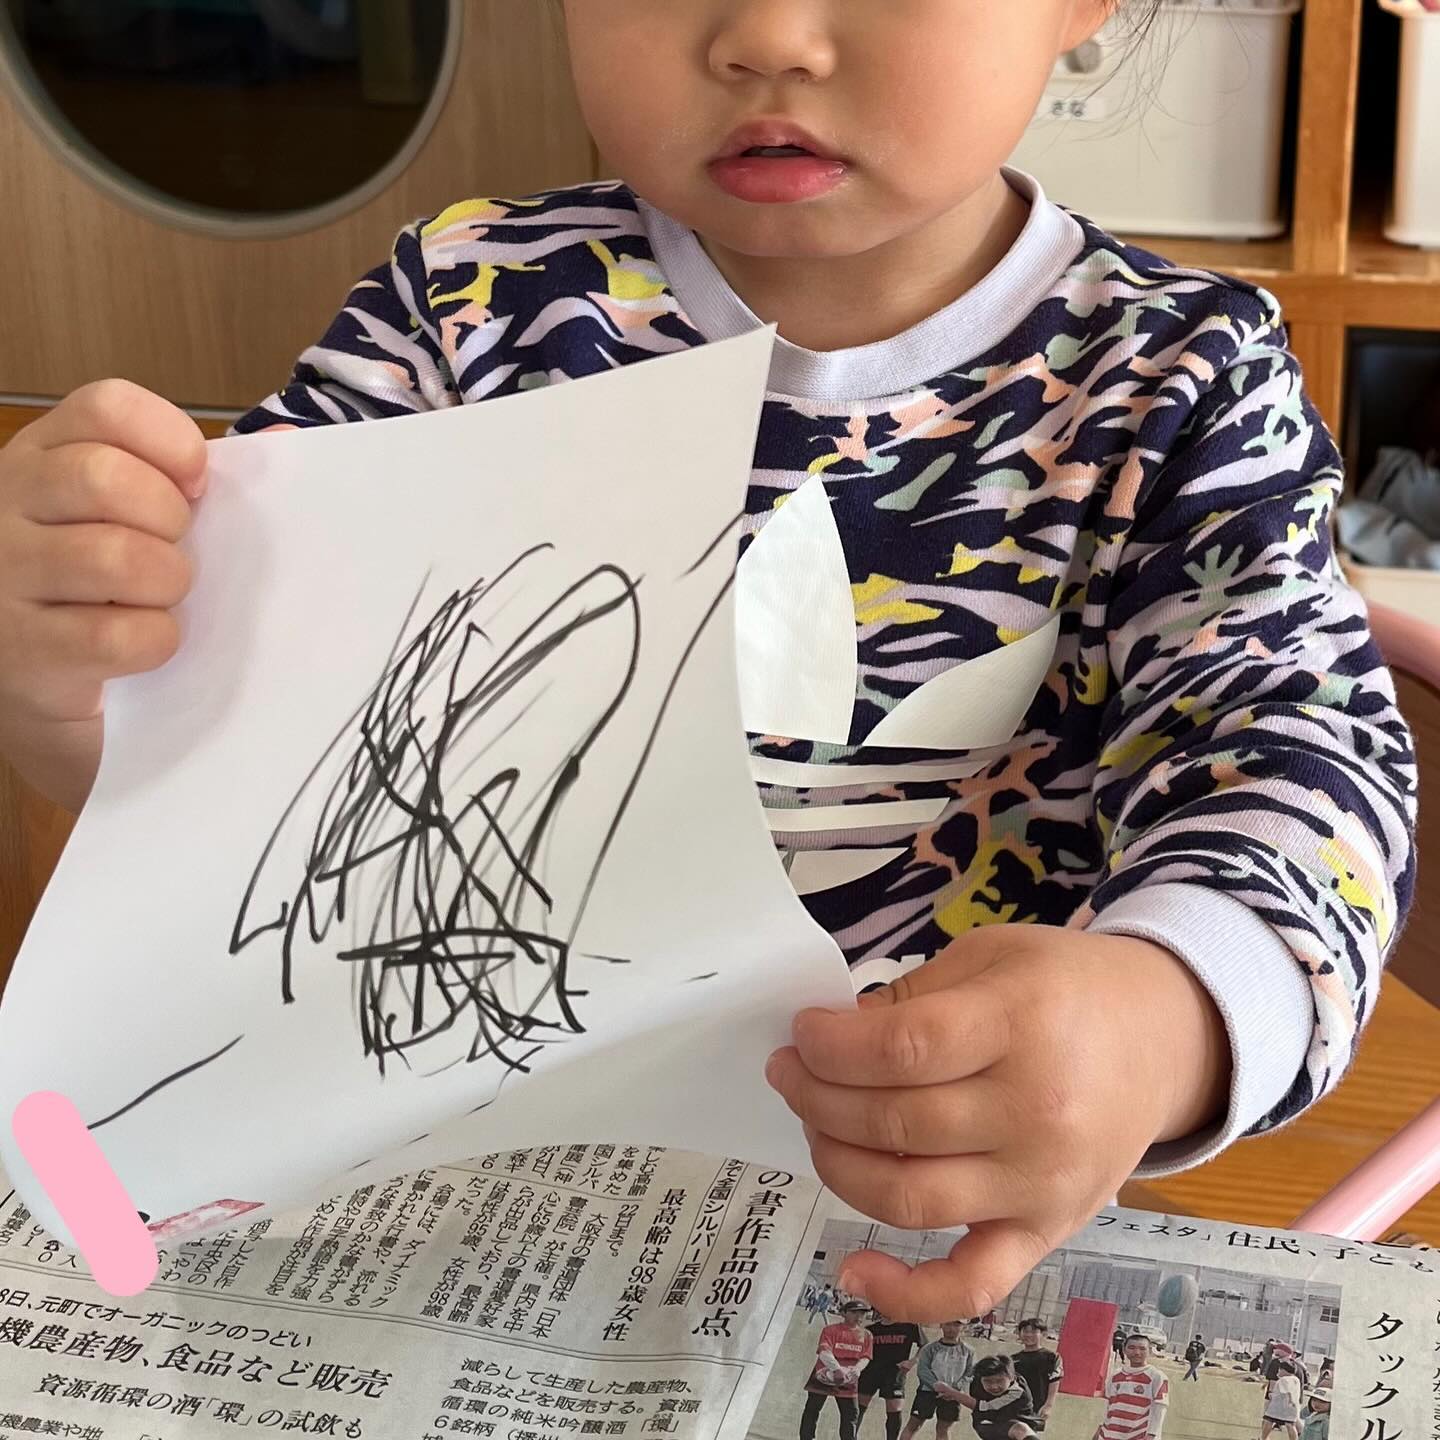 .みんなで書き初めをしました！✍️そらぐみ(0歳児)さんもほしぐみ(1歳児)さんも上手に筆ペンを持って書き初めができましたにじぐみ(2歳児)さんは半紙に筆と墨汁を使って書き初めをしました♪#神戸市#垂水区#舞多聞#小規模保育園#コミュセン舞多聞#子育て#認可保育園#学園都市#書き初め#正月製作